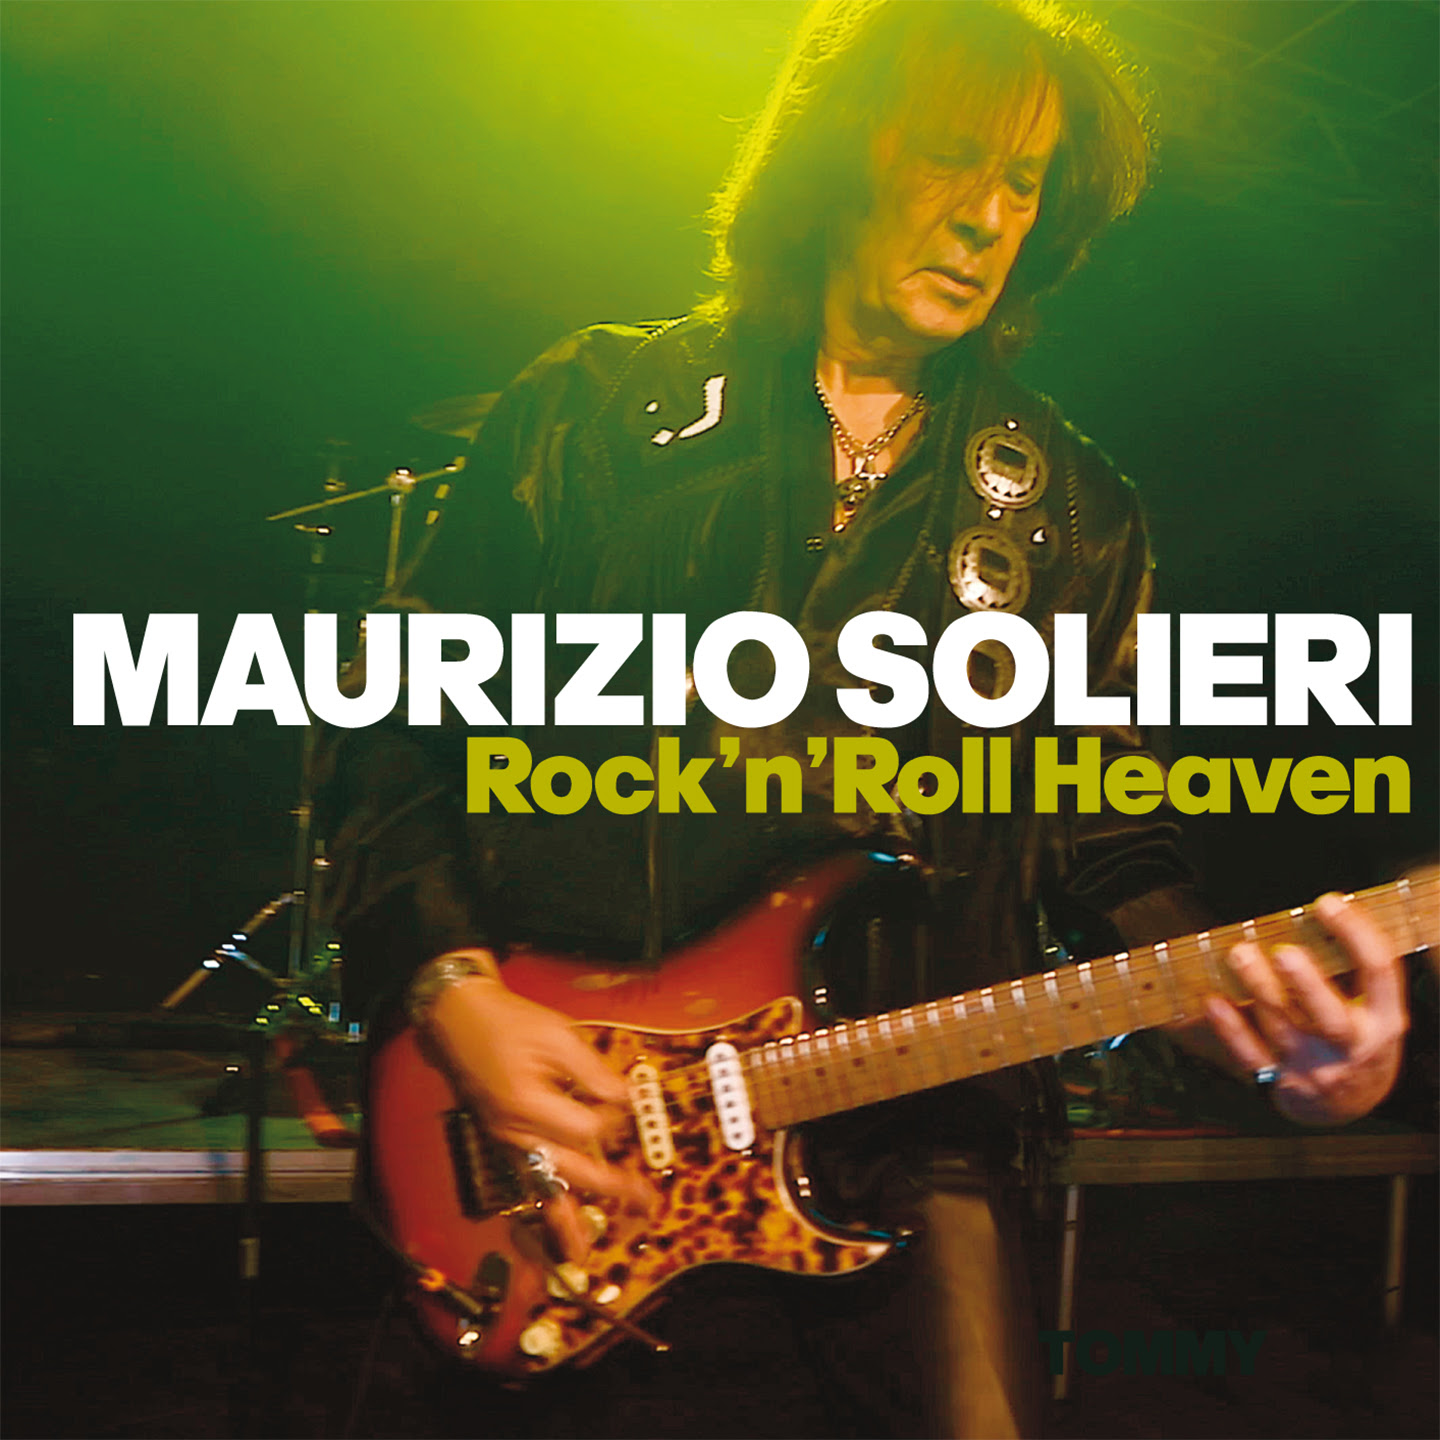 Un chitarrista in paradiso, Maurizio Solieri presenta Rock’n’roll Heaven